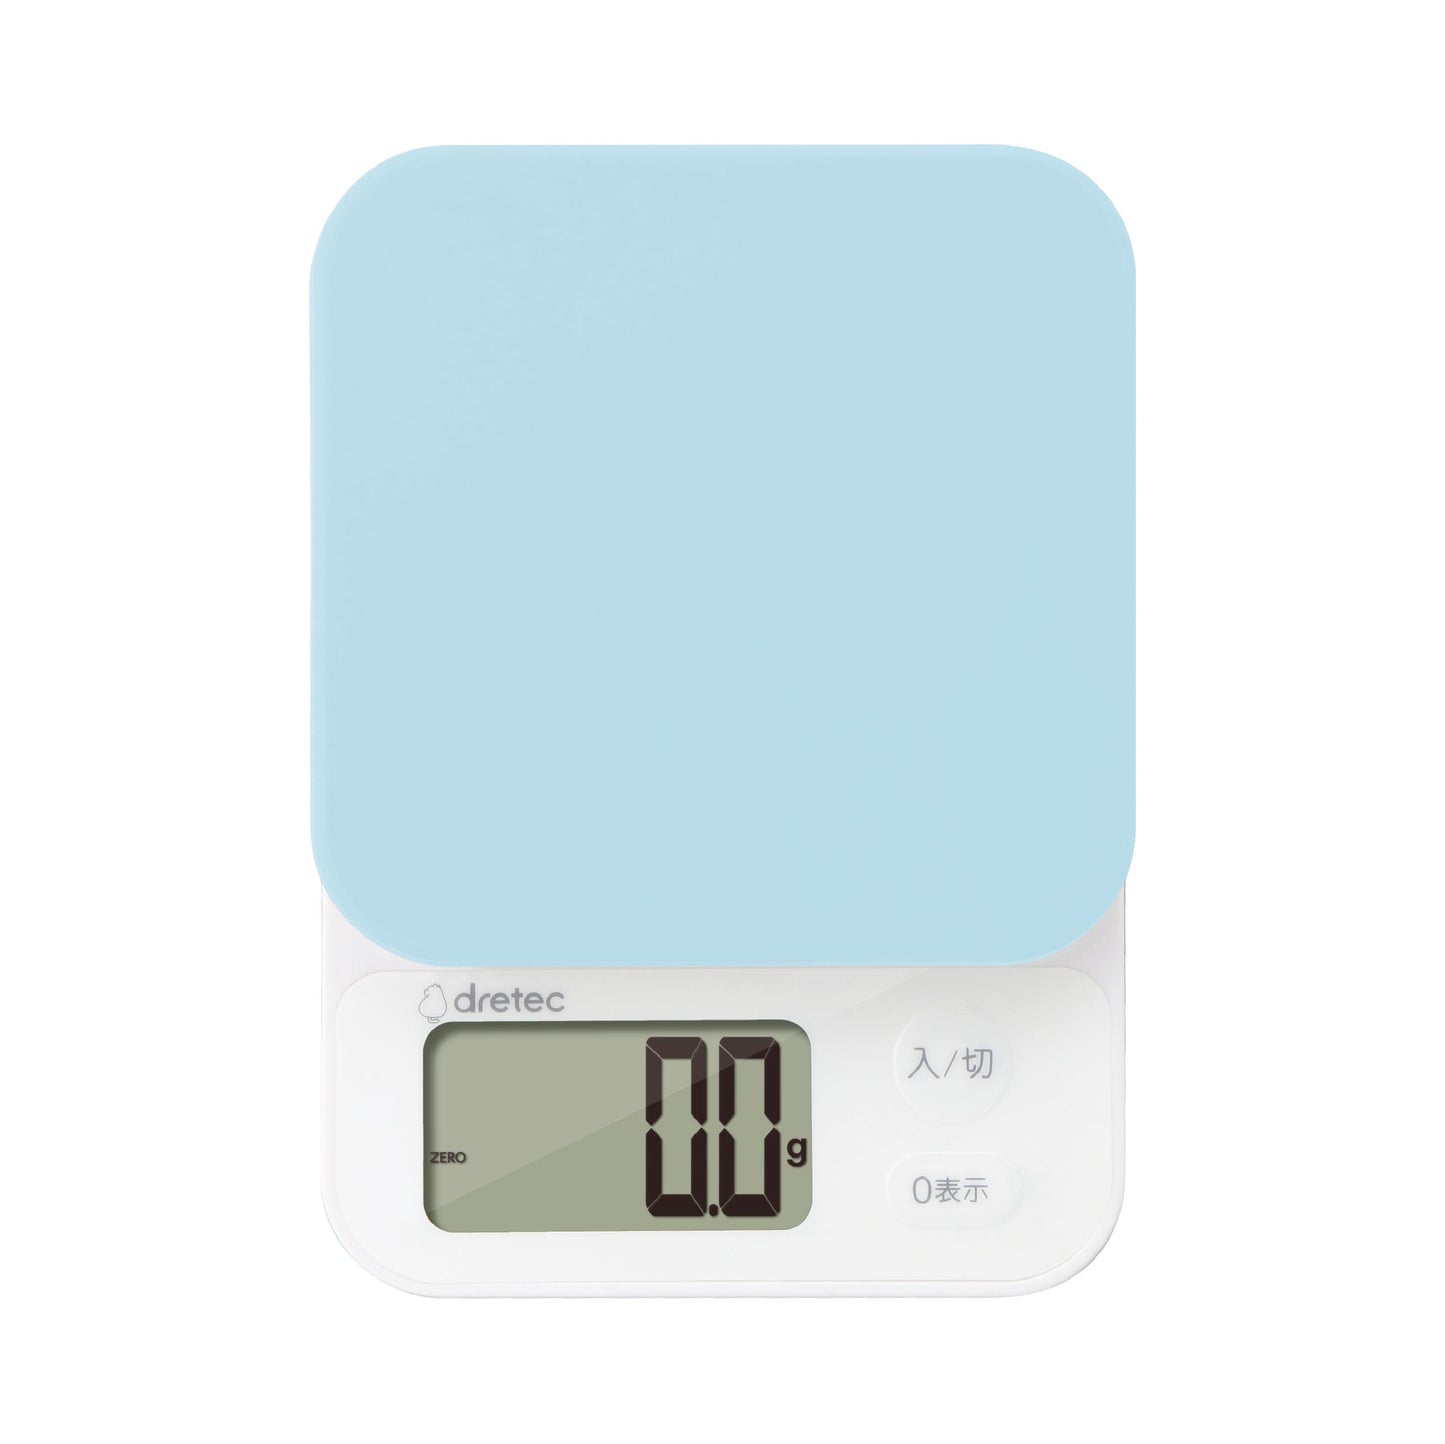 Precision Digital Scale (0.1g-2kg) in Blue